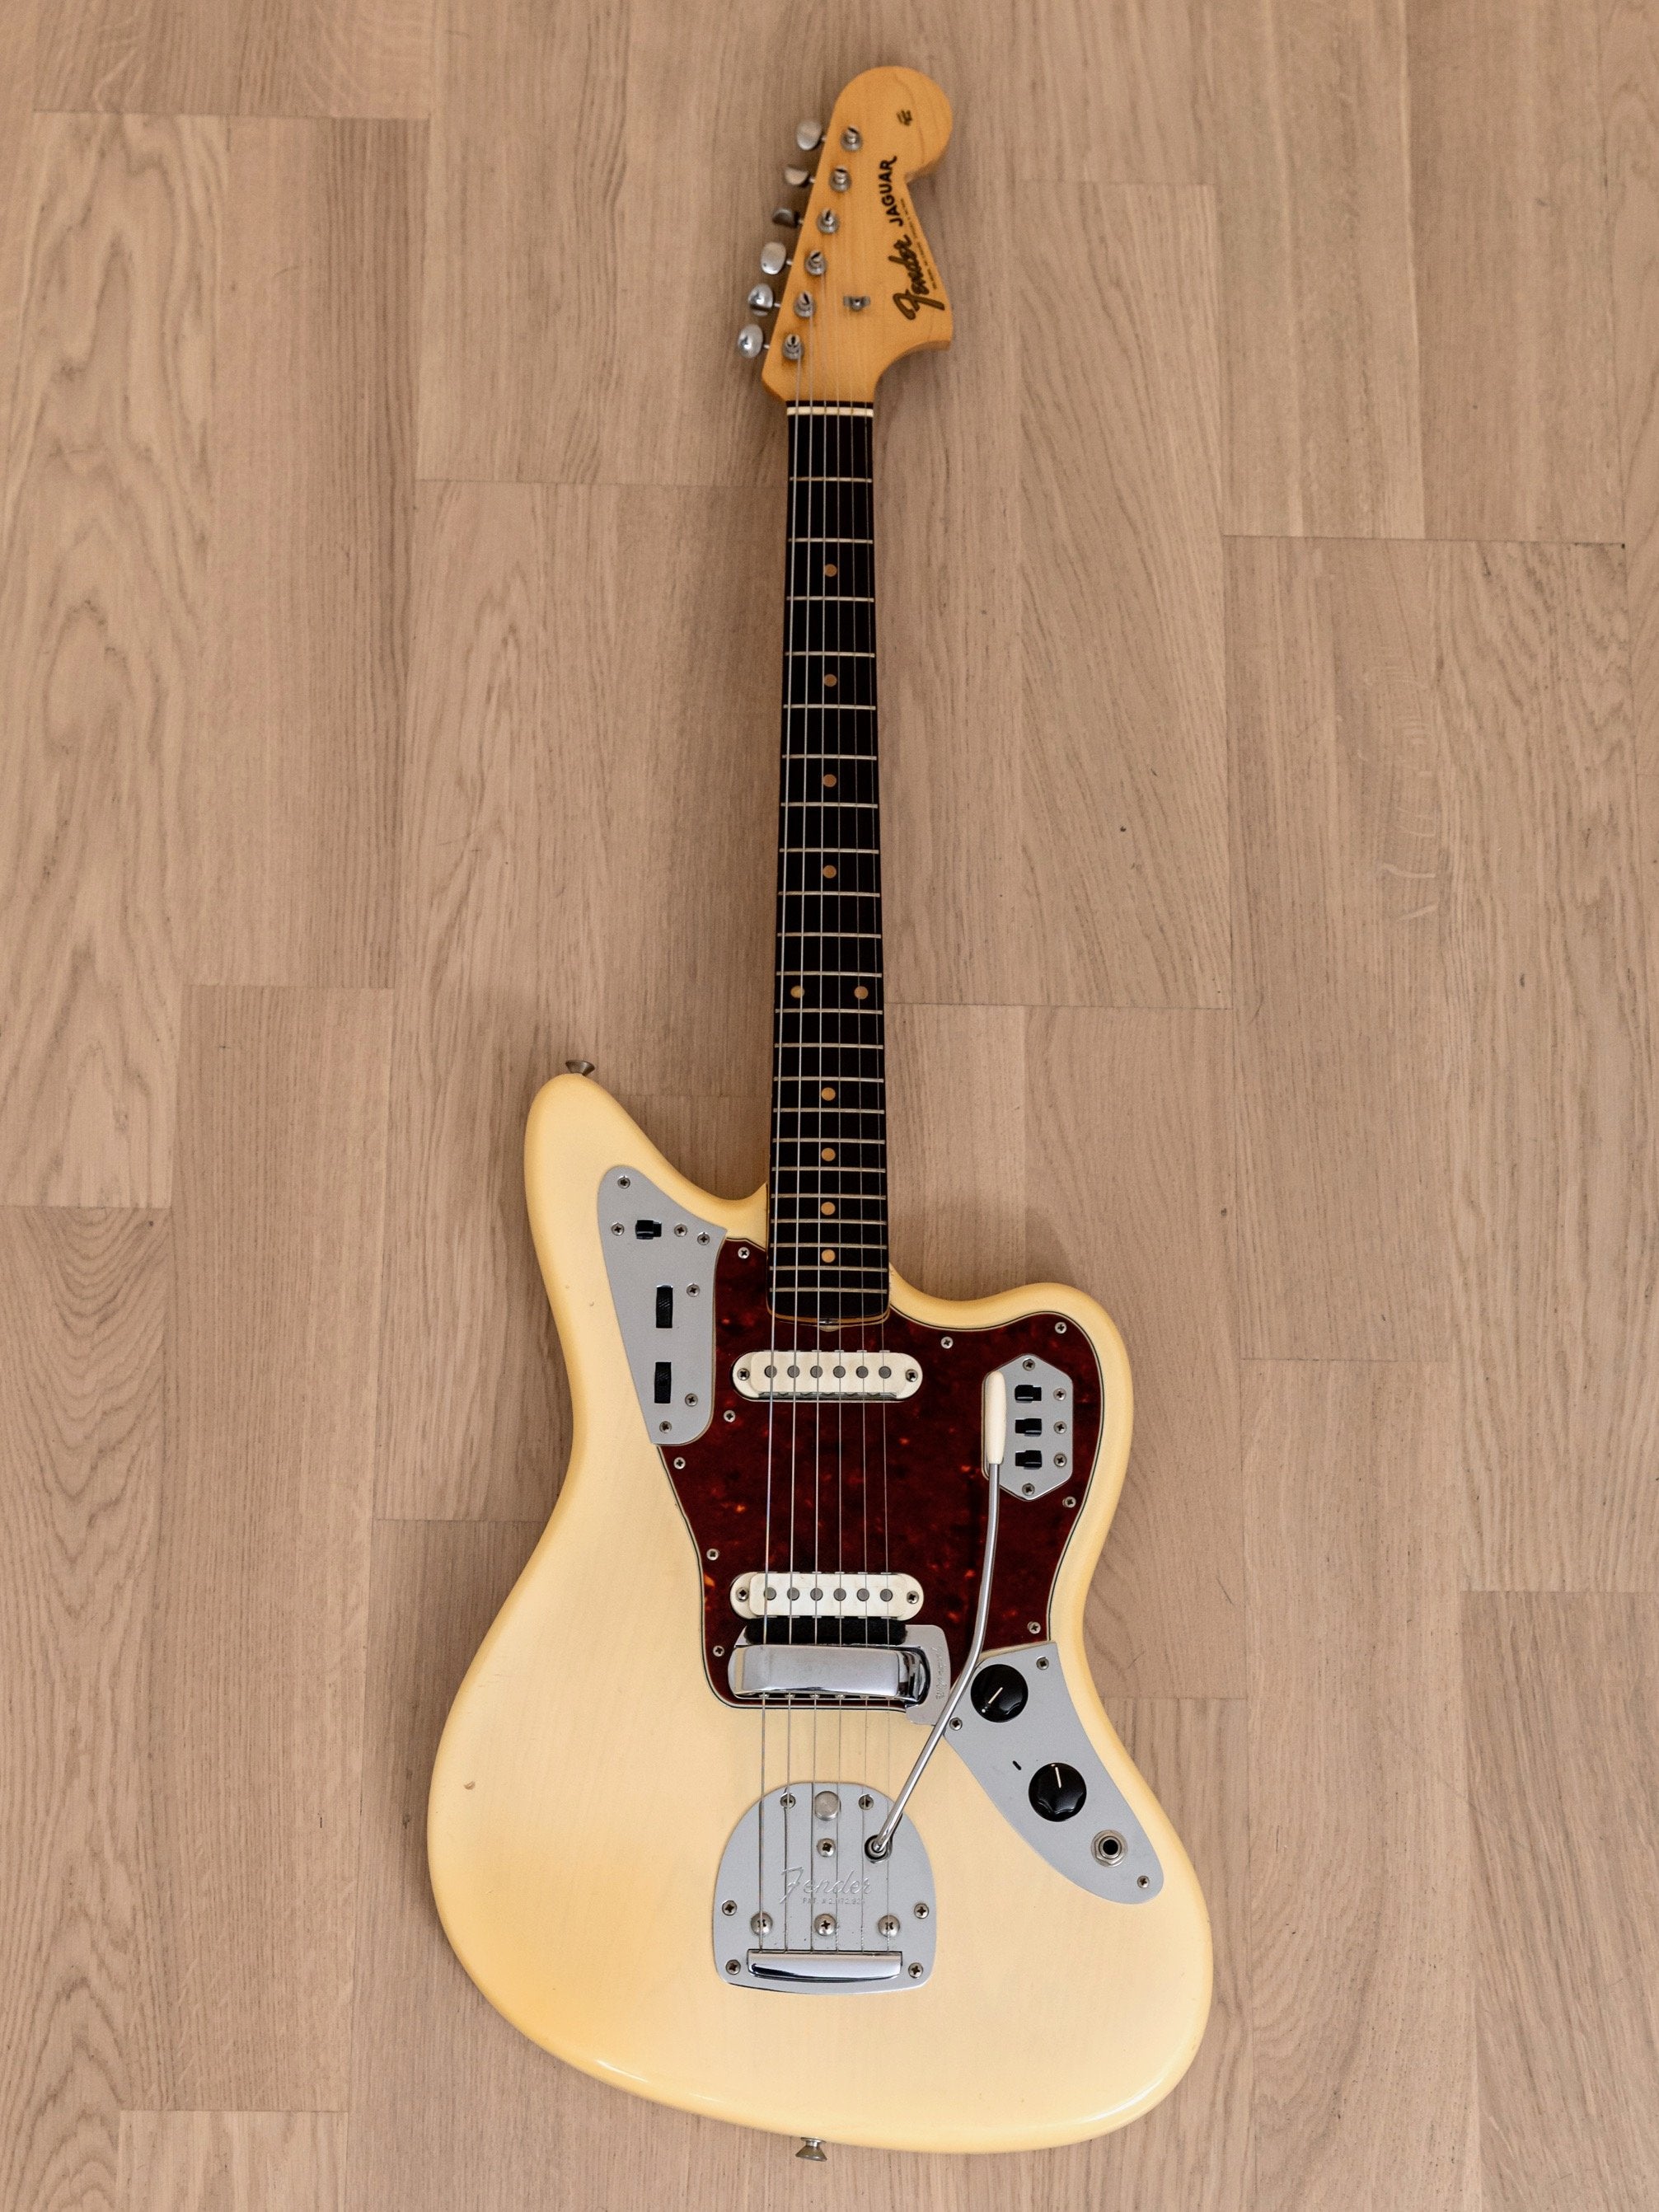 1963 Fender Jaguar Vintage Pre-CBS Offset Guitar Blonde, Collector-Grade w/ Hangtag & Case